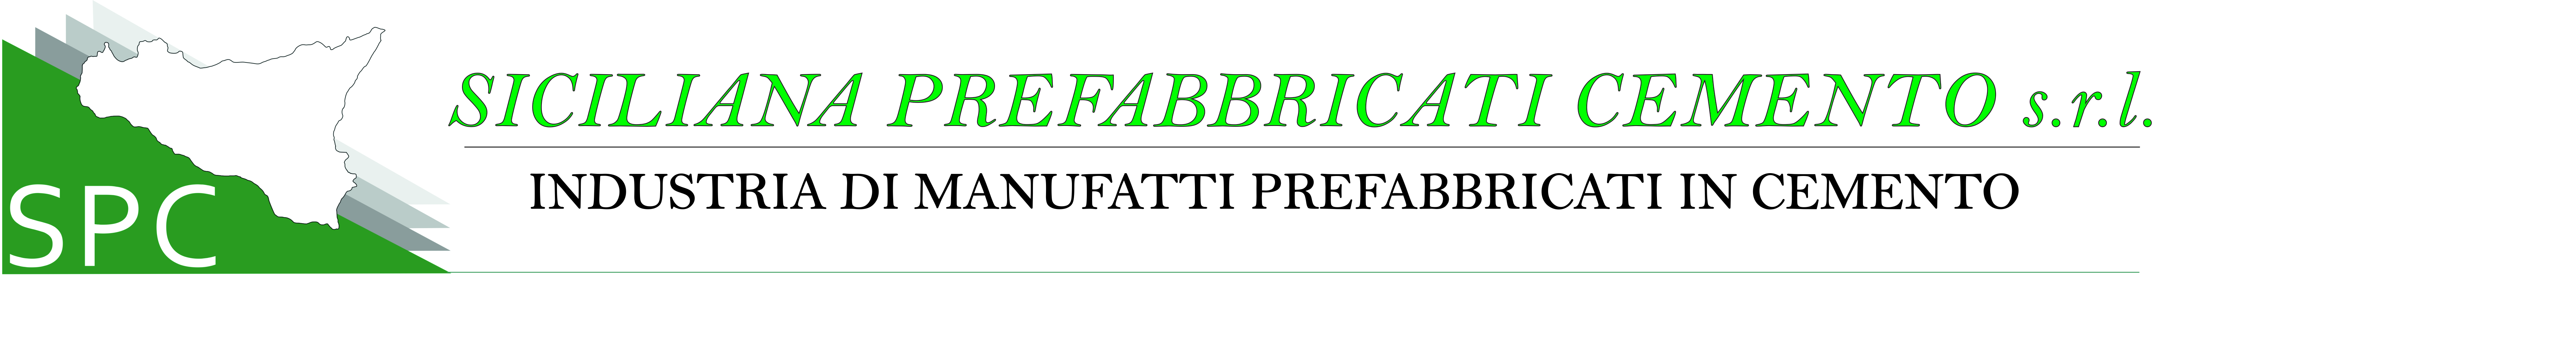 Siciliana Prefabbricati Cemento S.r.l.